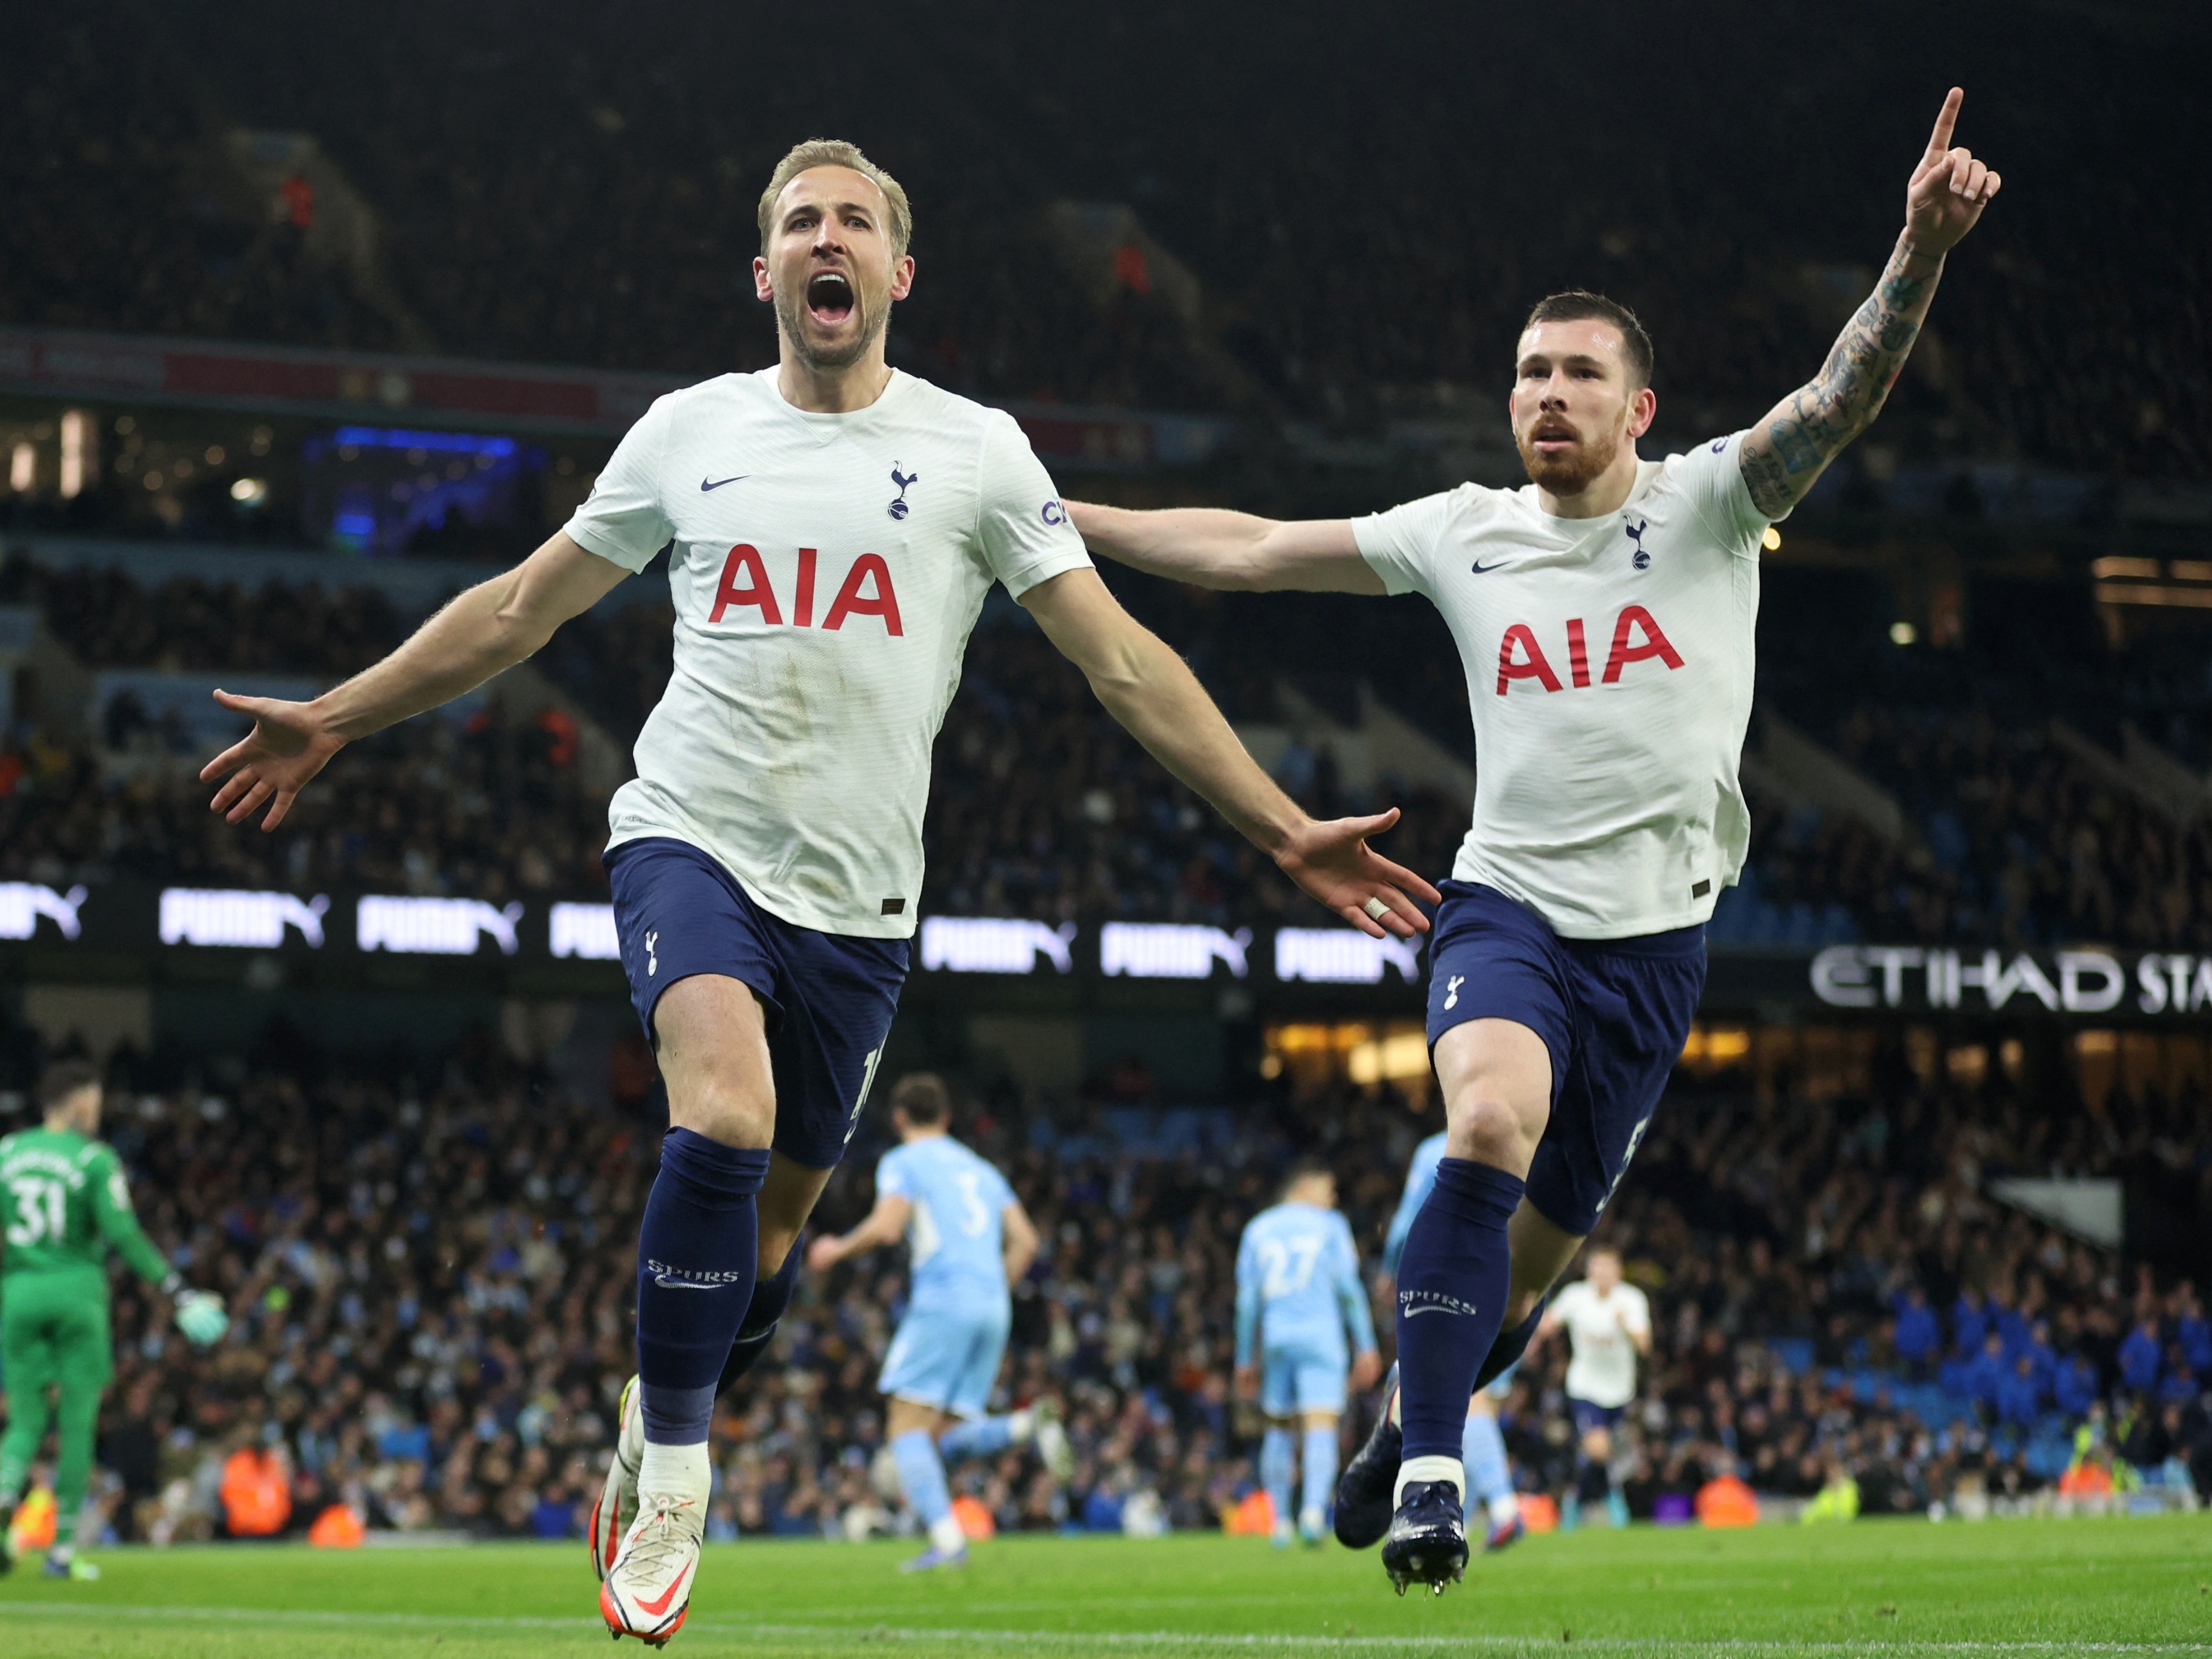 Tottenham na Liga dos Campeões: jogos, artilharia, jogadores